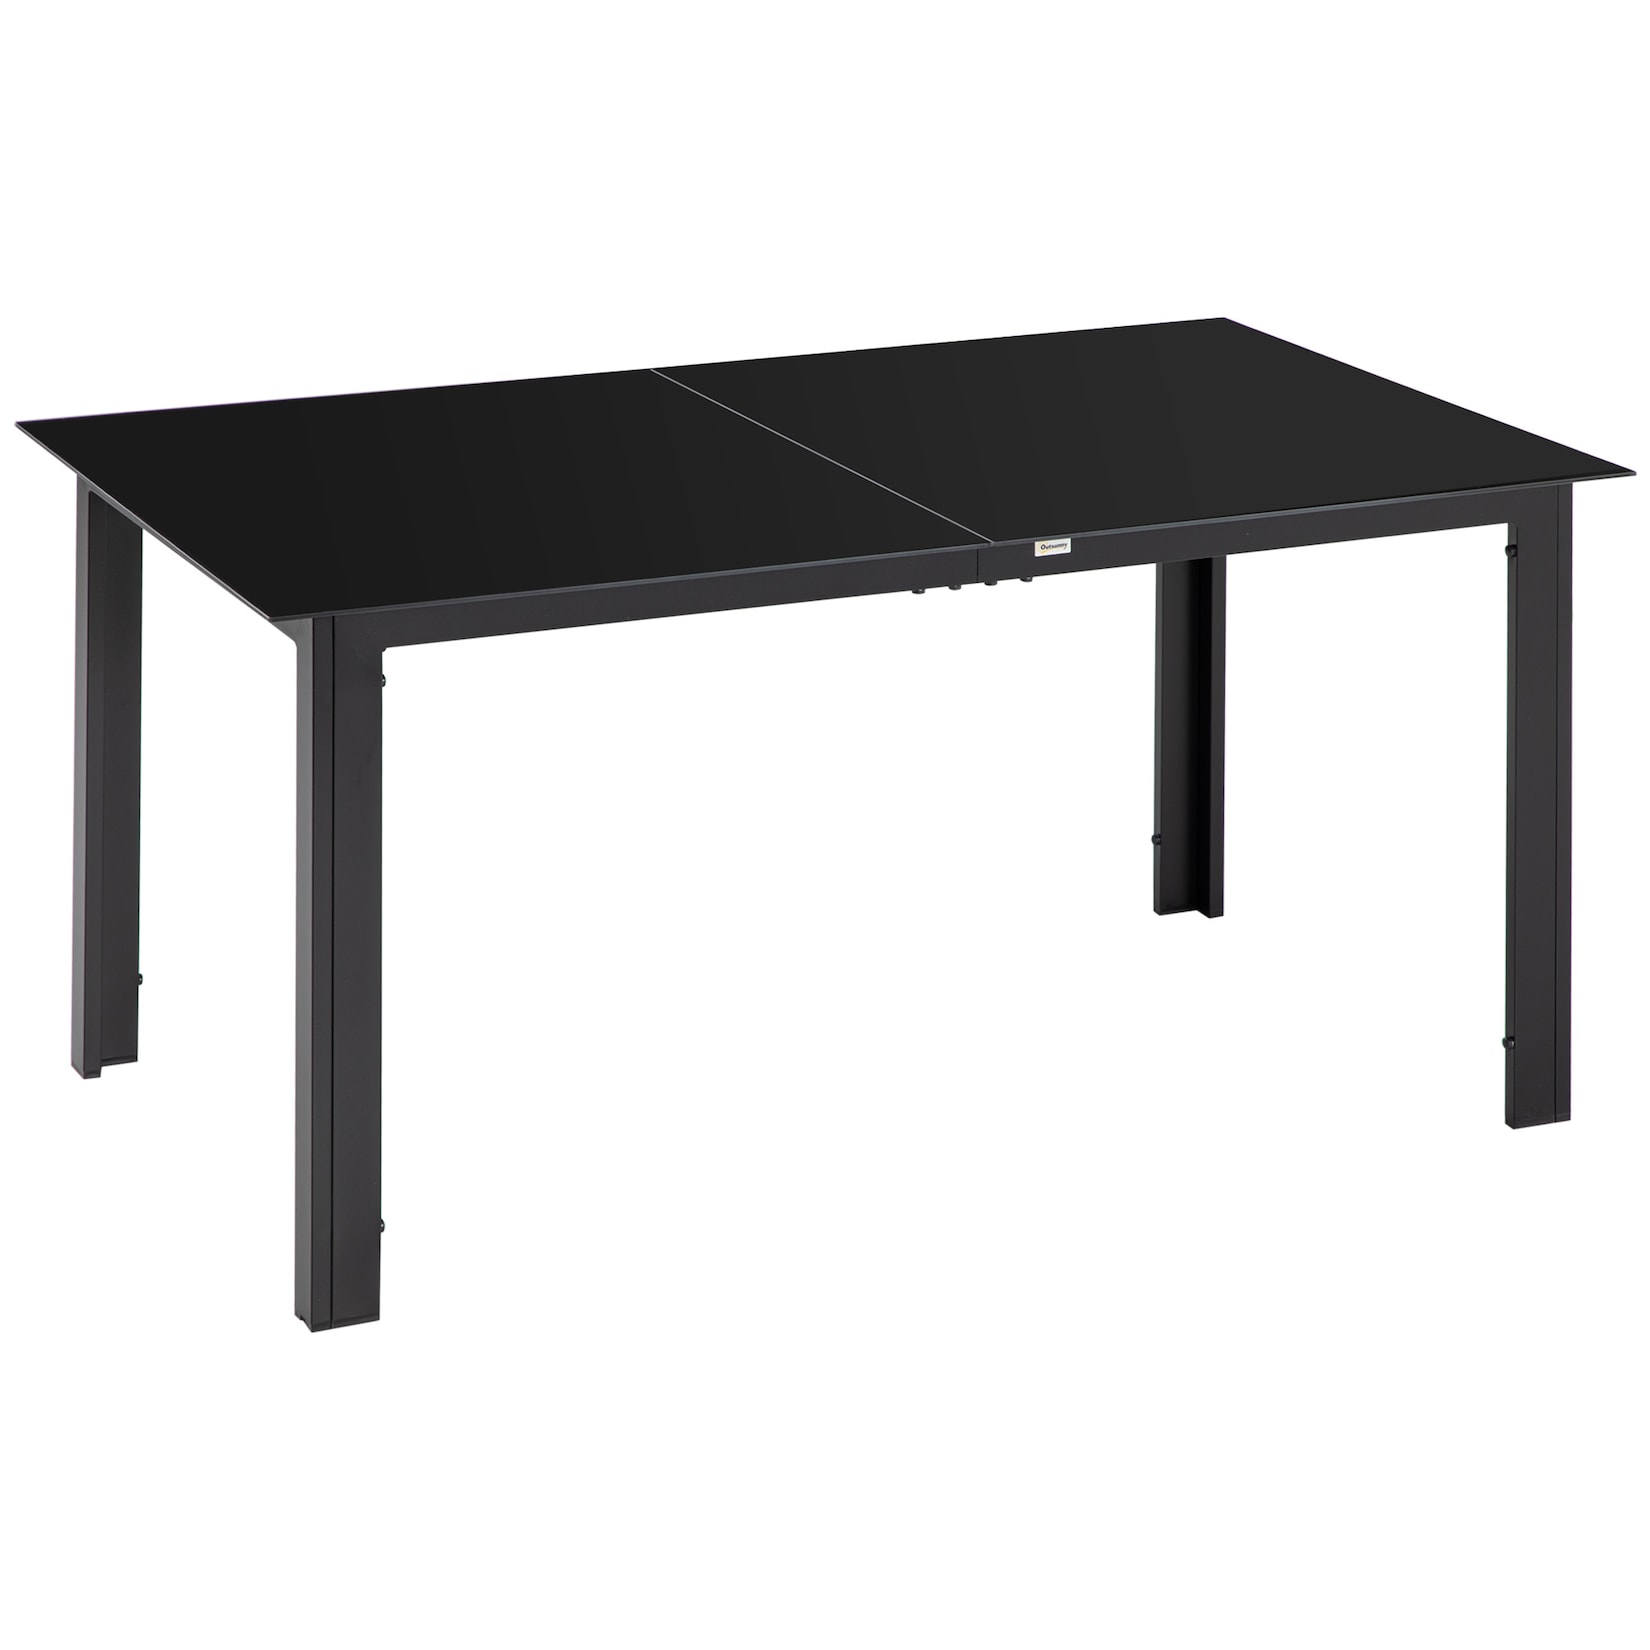 Outsunny Gartentisch mit Glastischplatte schwarz 150L x 90B x 74H cm